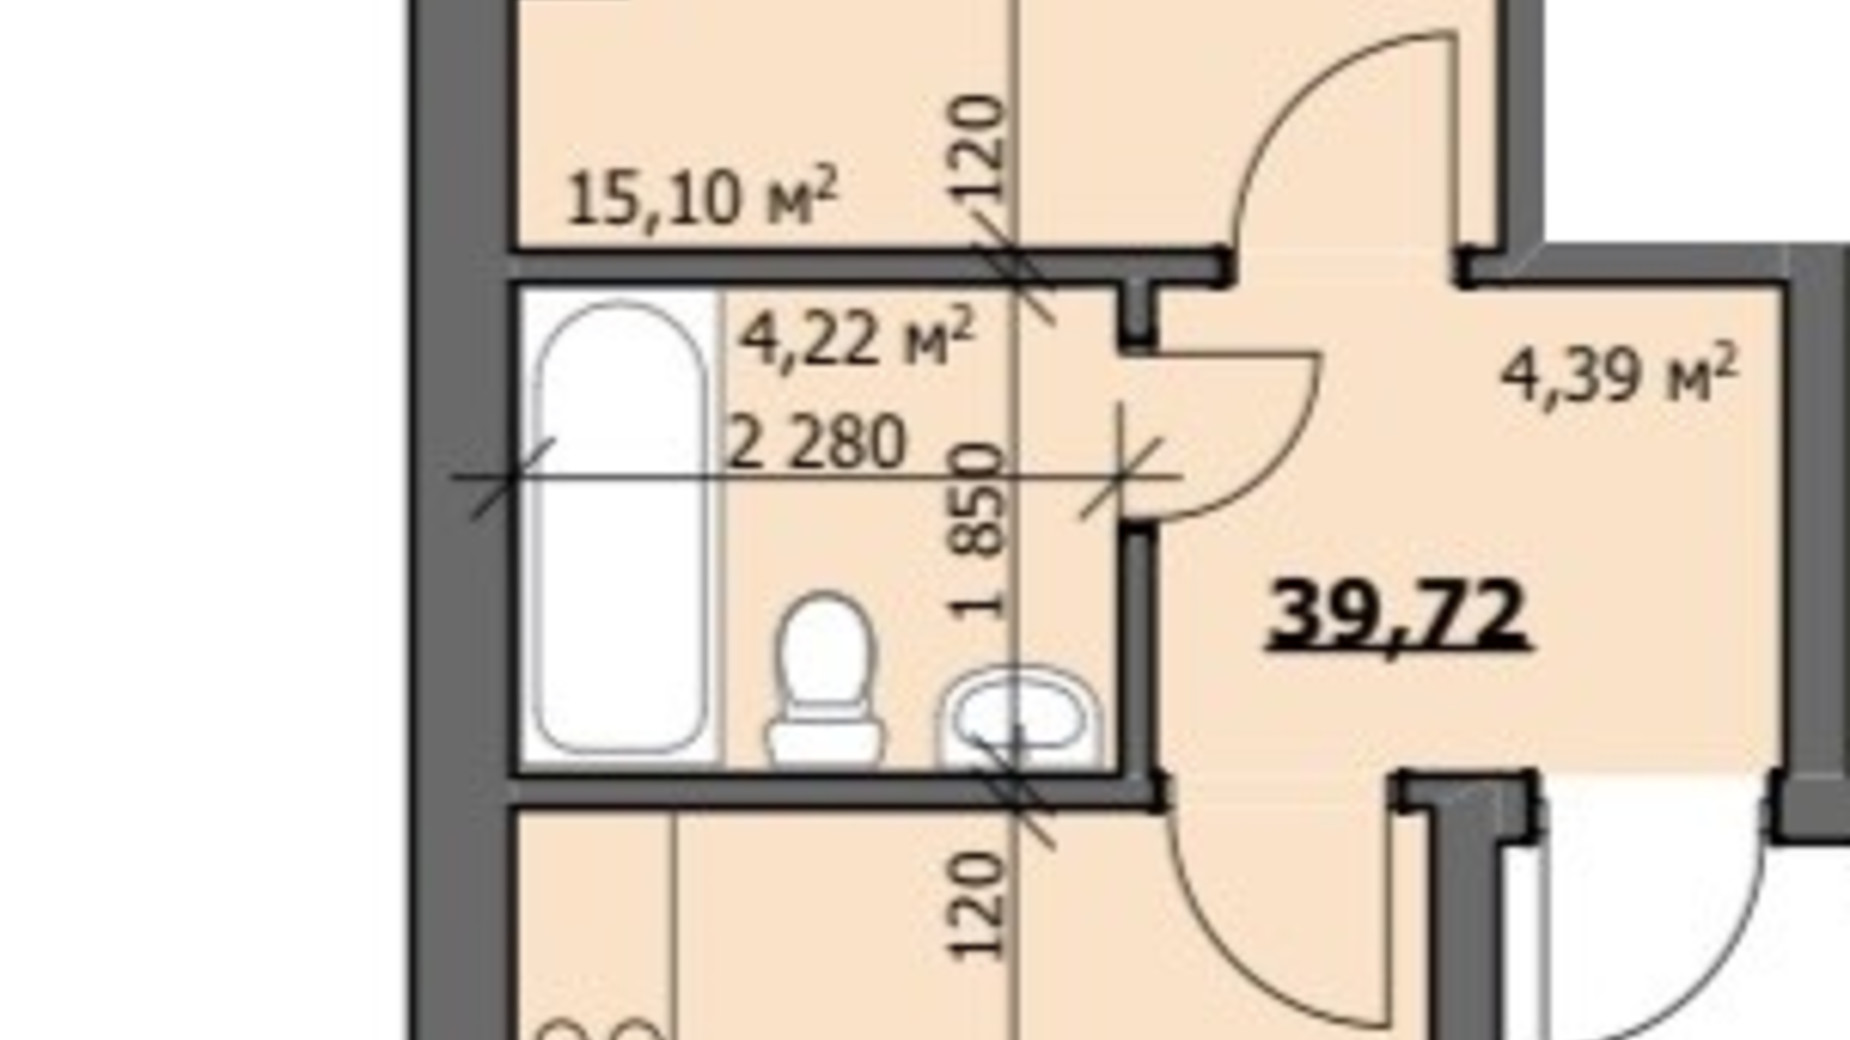 Планировка 1-комнатной квартиры в ЖК ул. Наливайко 40 м², фото 686455